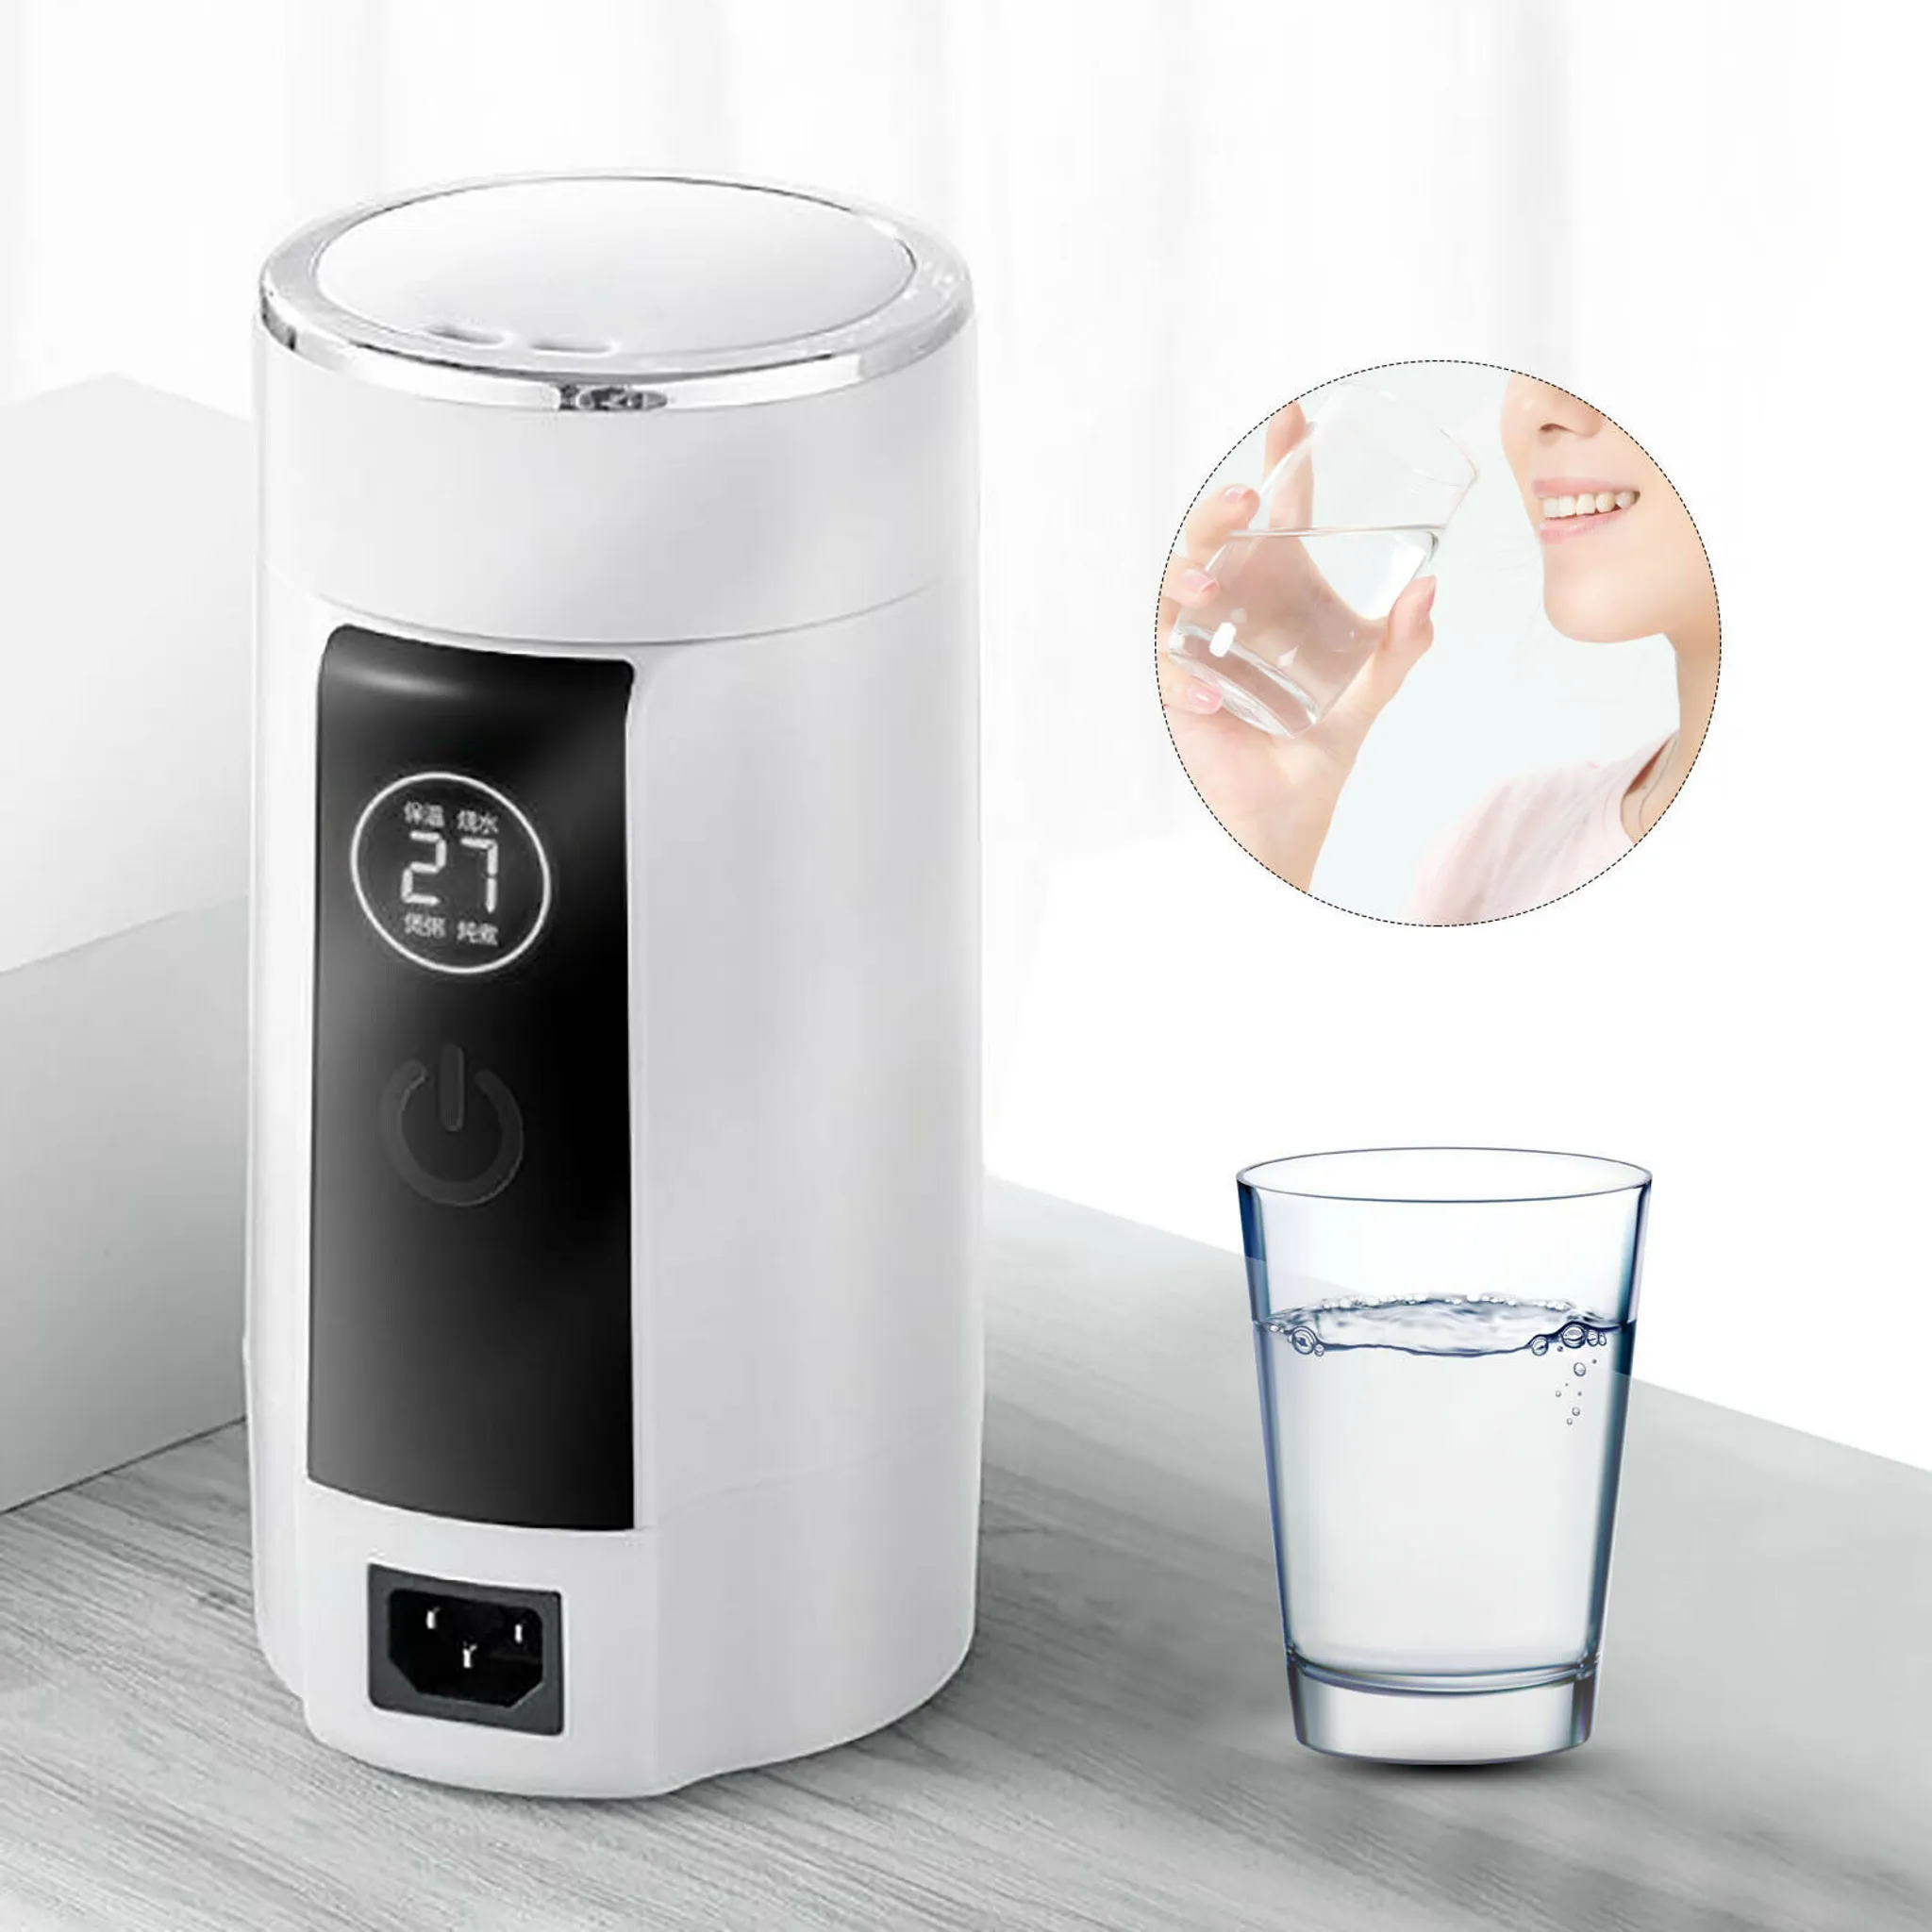 Faltpumpe Touch Charging Wireless Küchenartikel & Haushaltsartikel Küchengeräte Heißwasserspender 